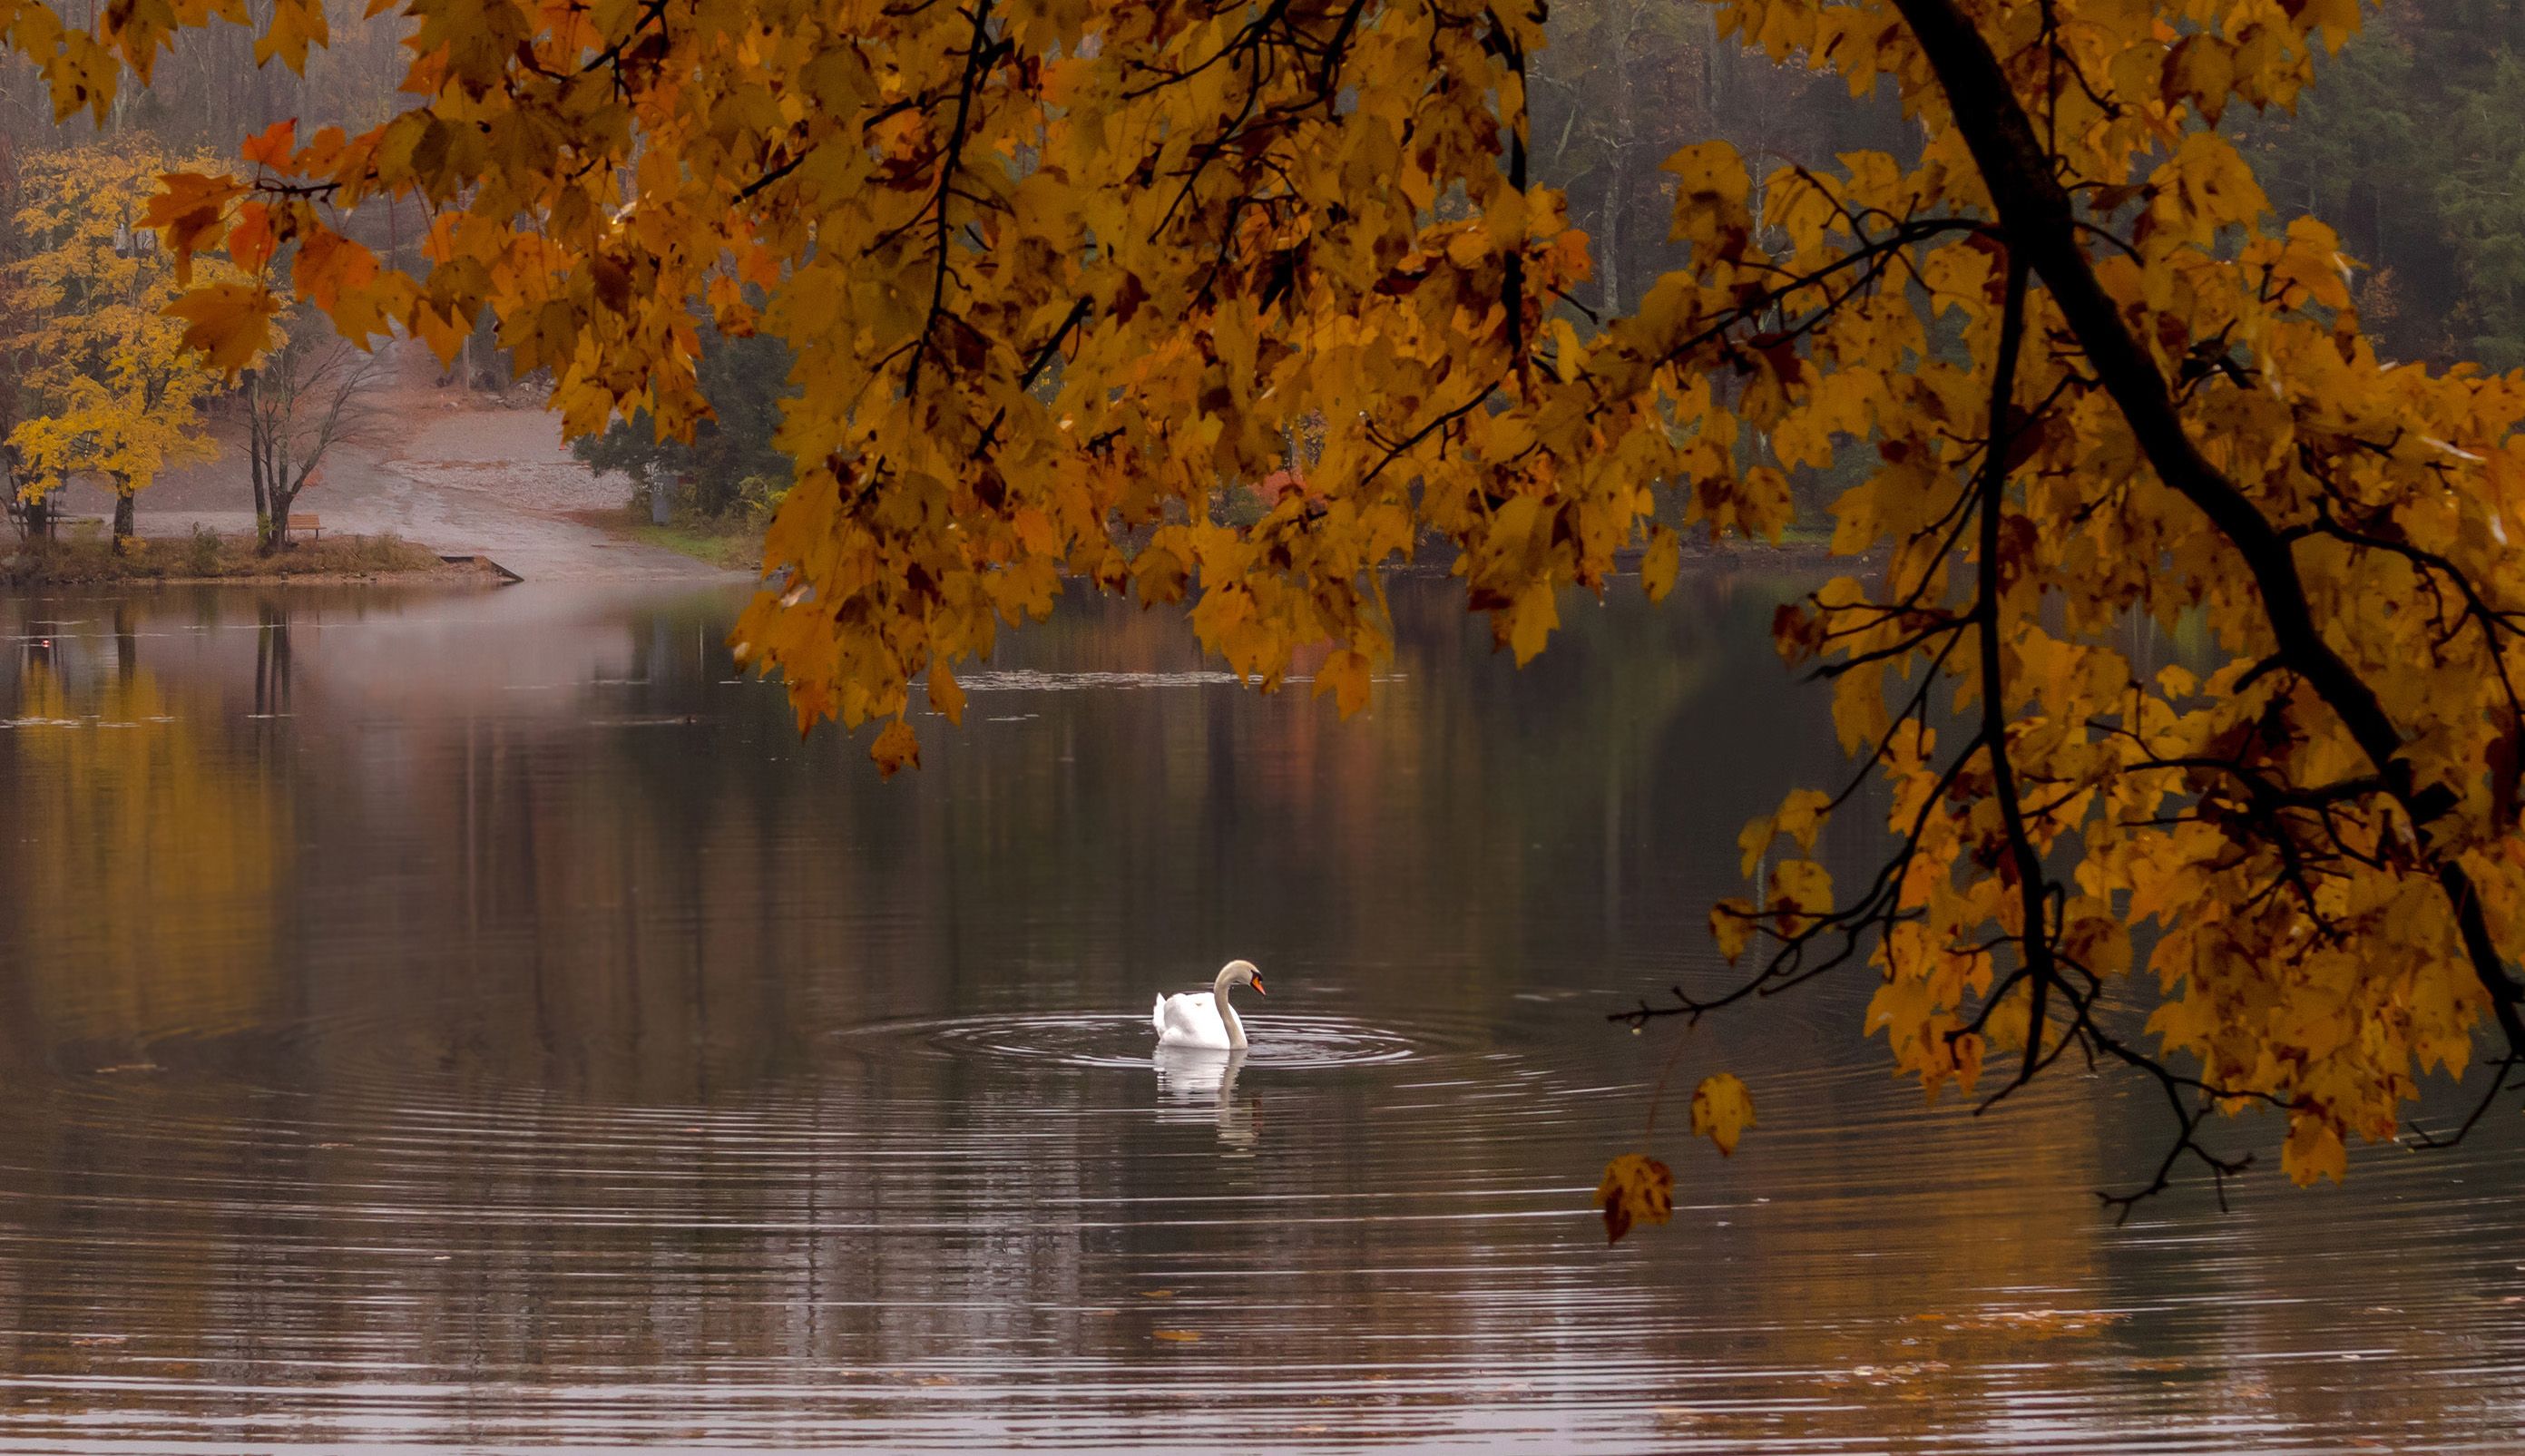 природа,осень,пейзаж,деревья,отражения,озеро,вода,листья,лебедь,птицы,животные,, Антонина Яновска